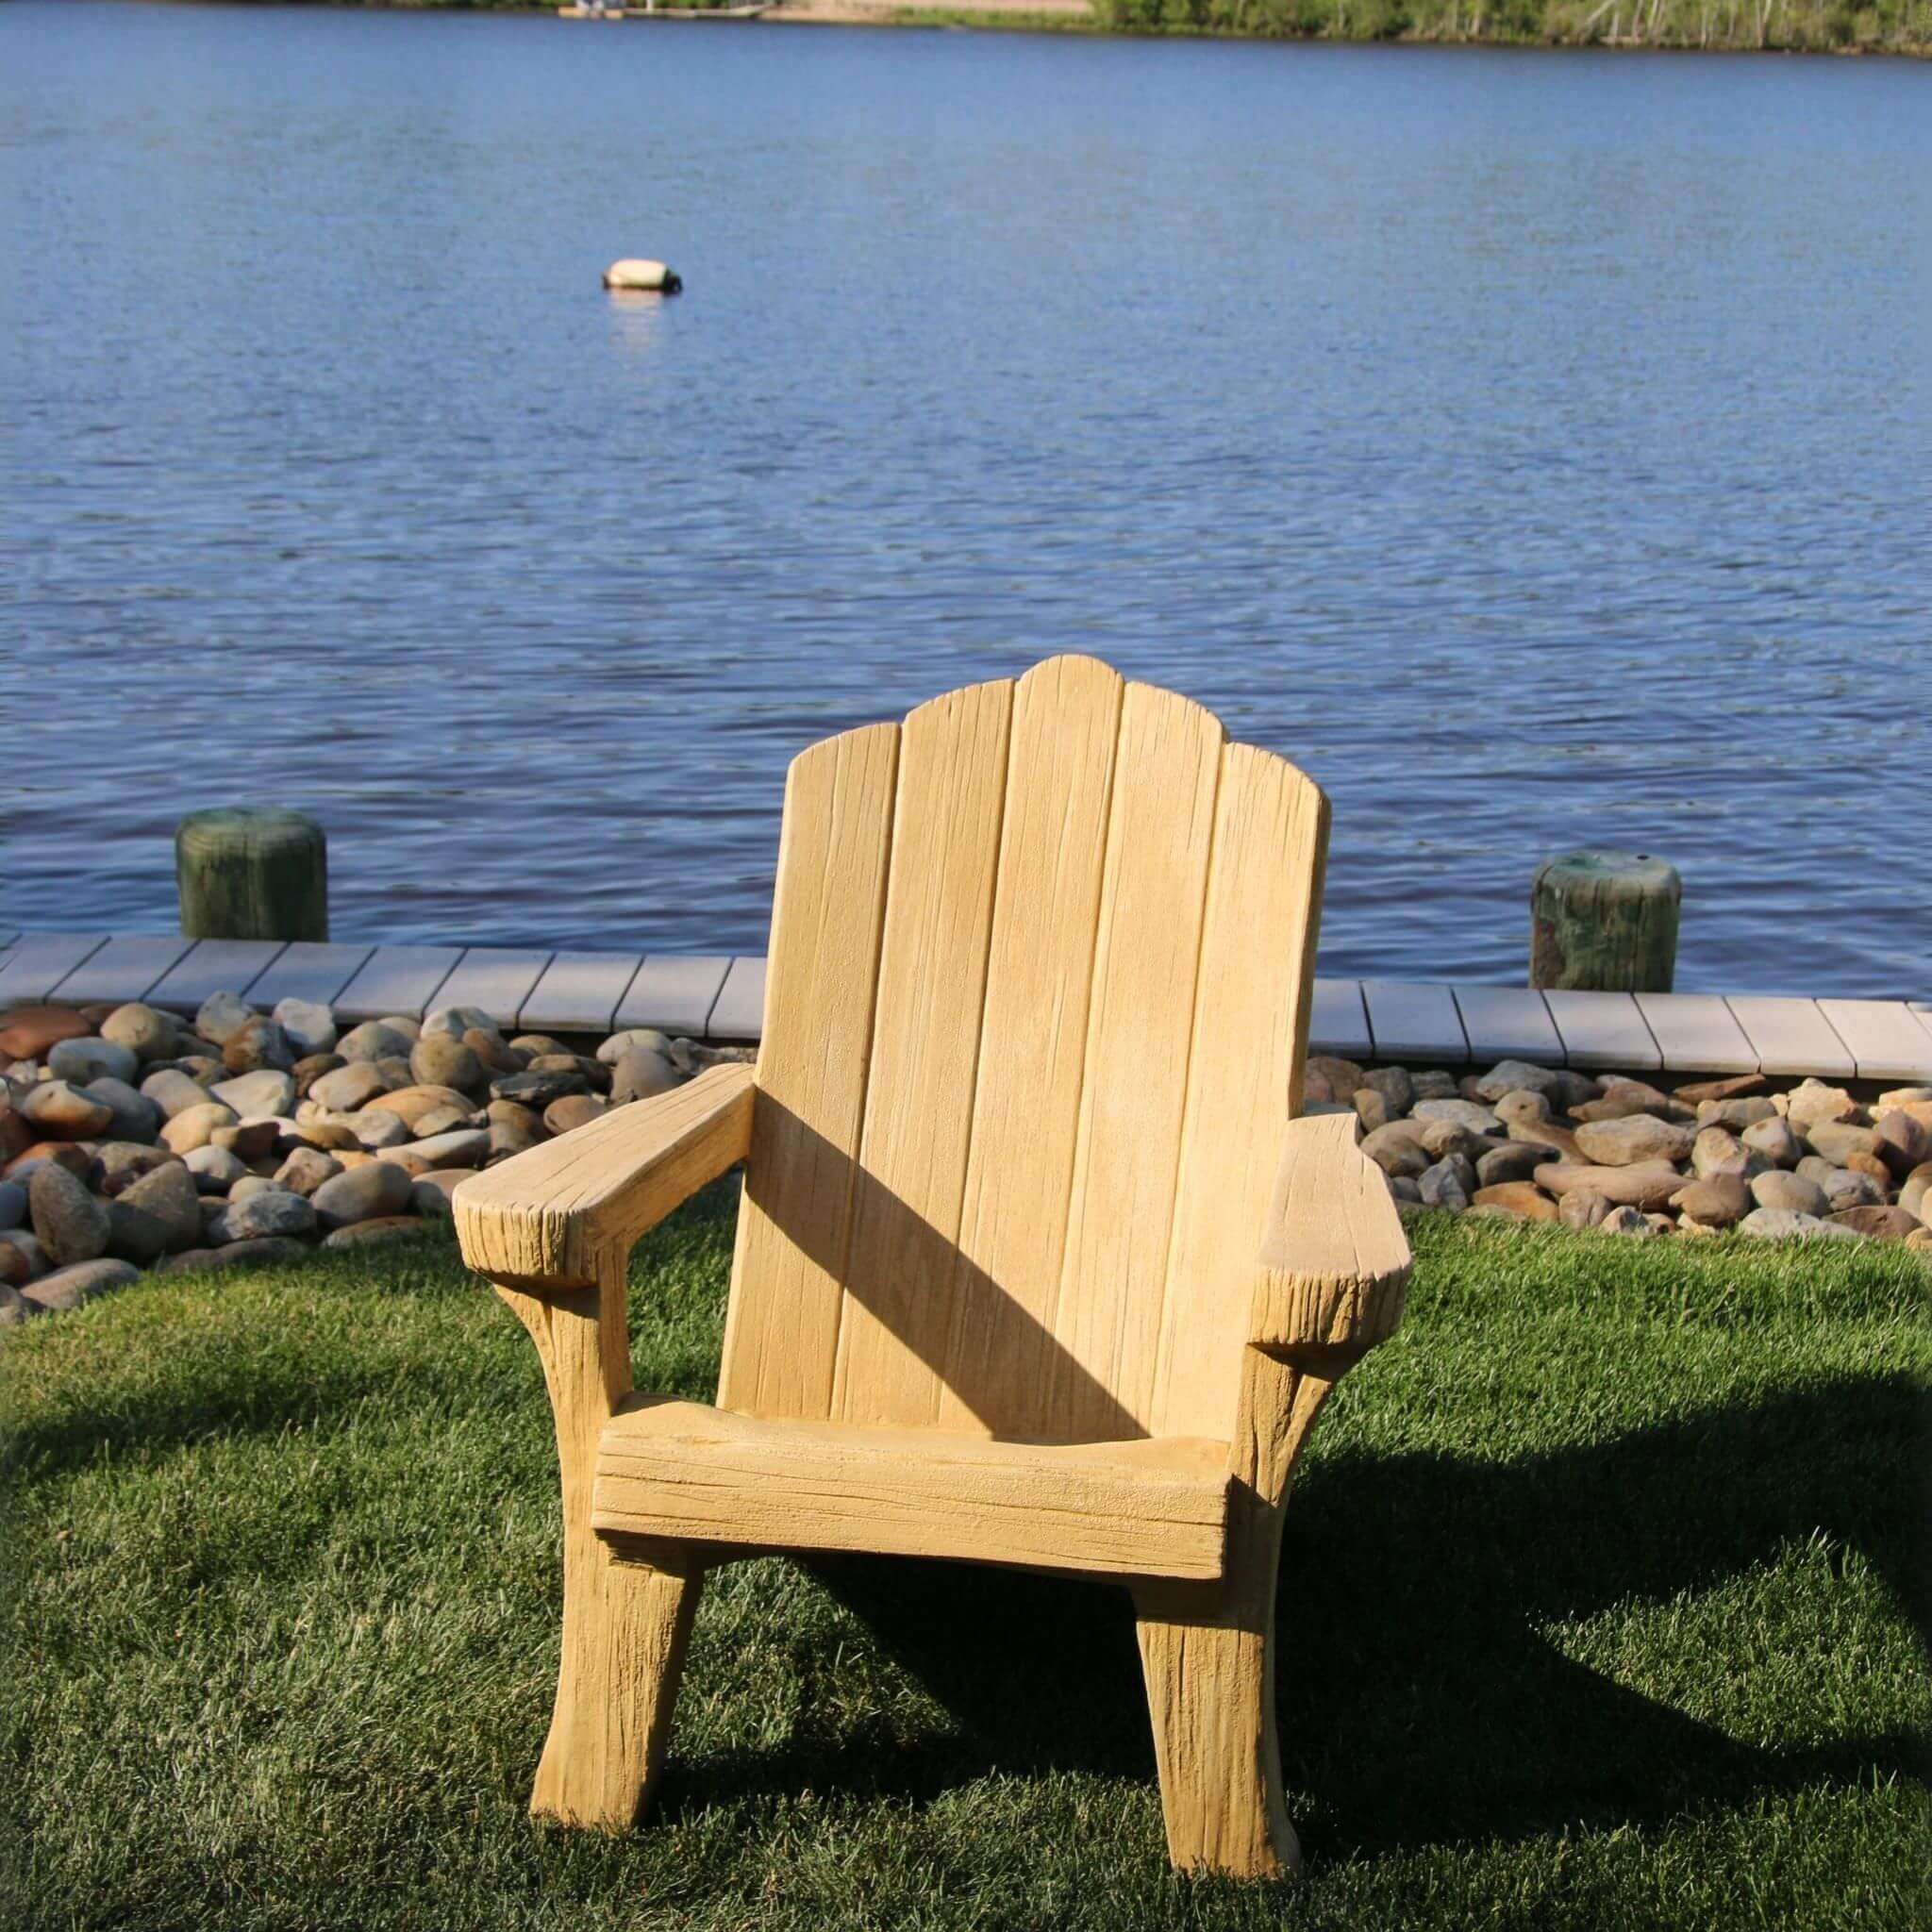  Rustic Adirondack Concrete Garden Chair - Massarellis #4750